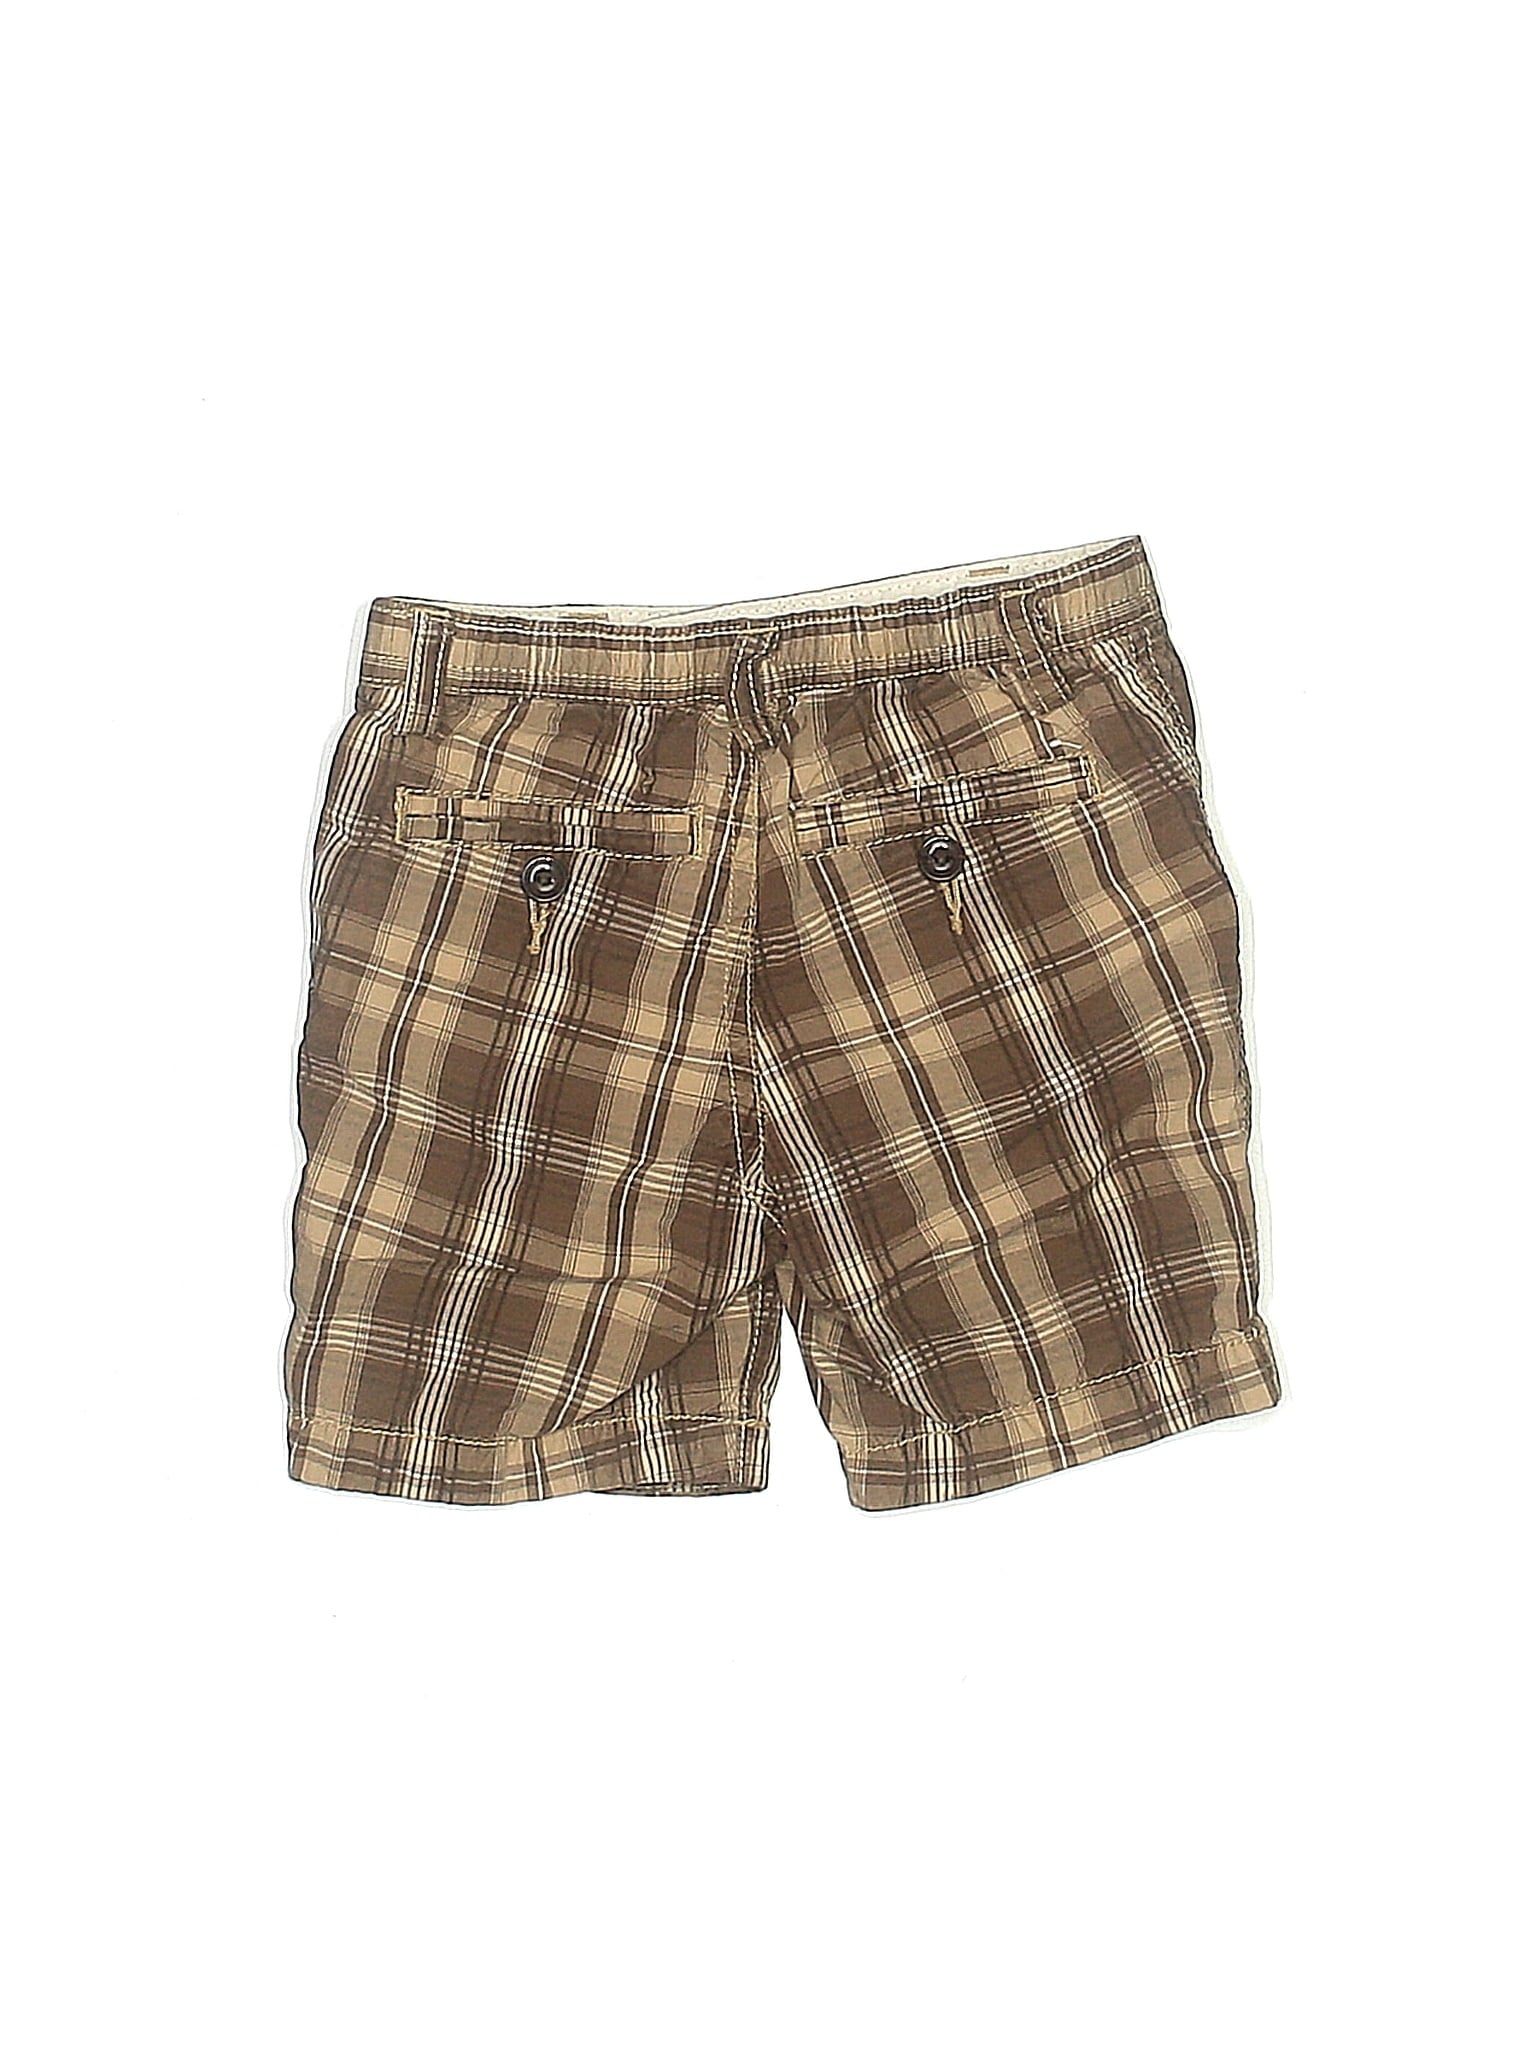 Khaki Shorts size - 6-12 mo